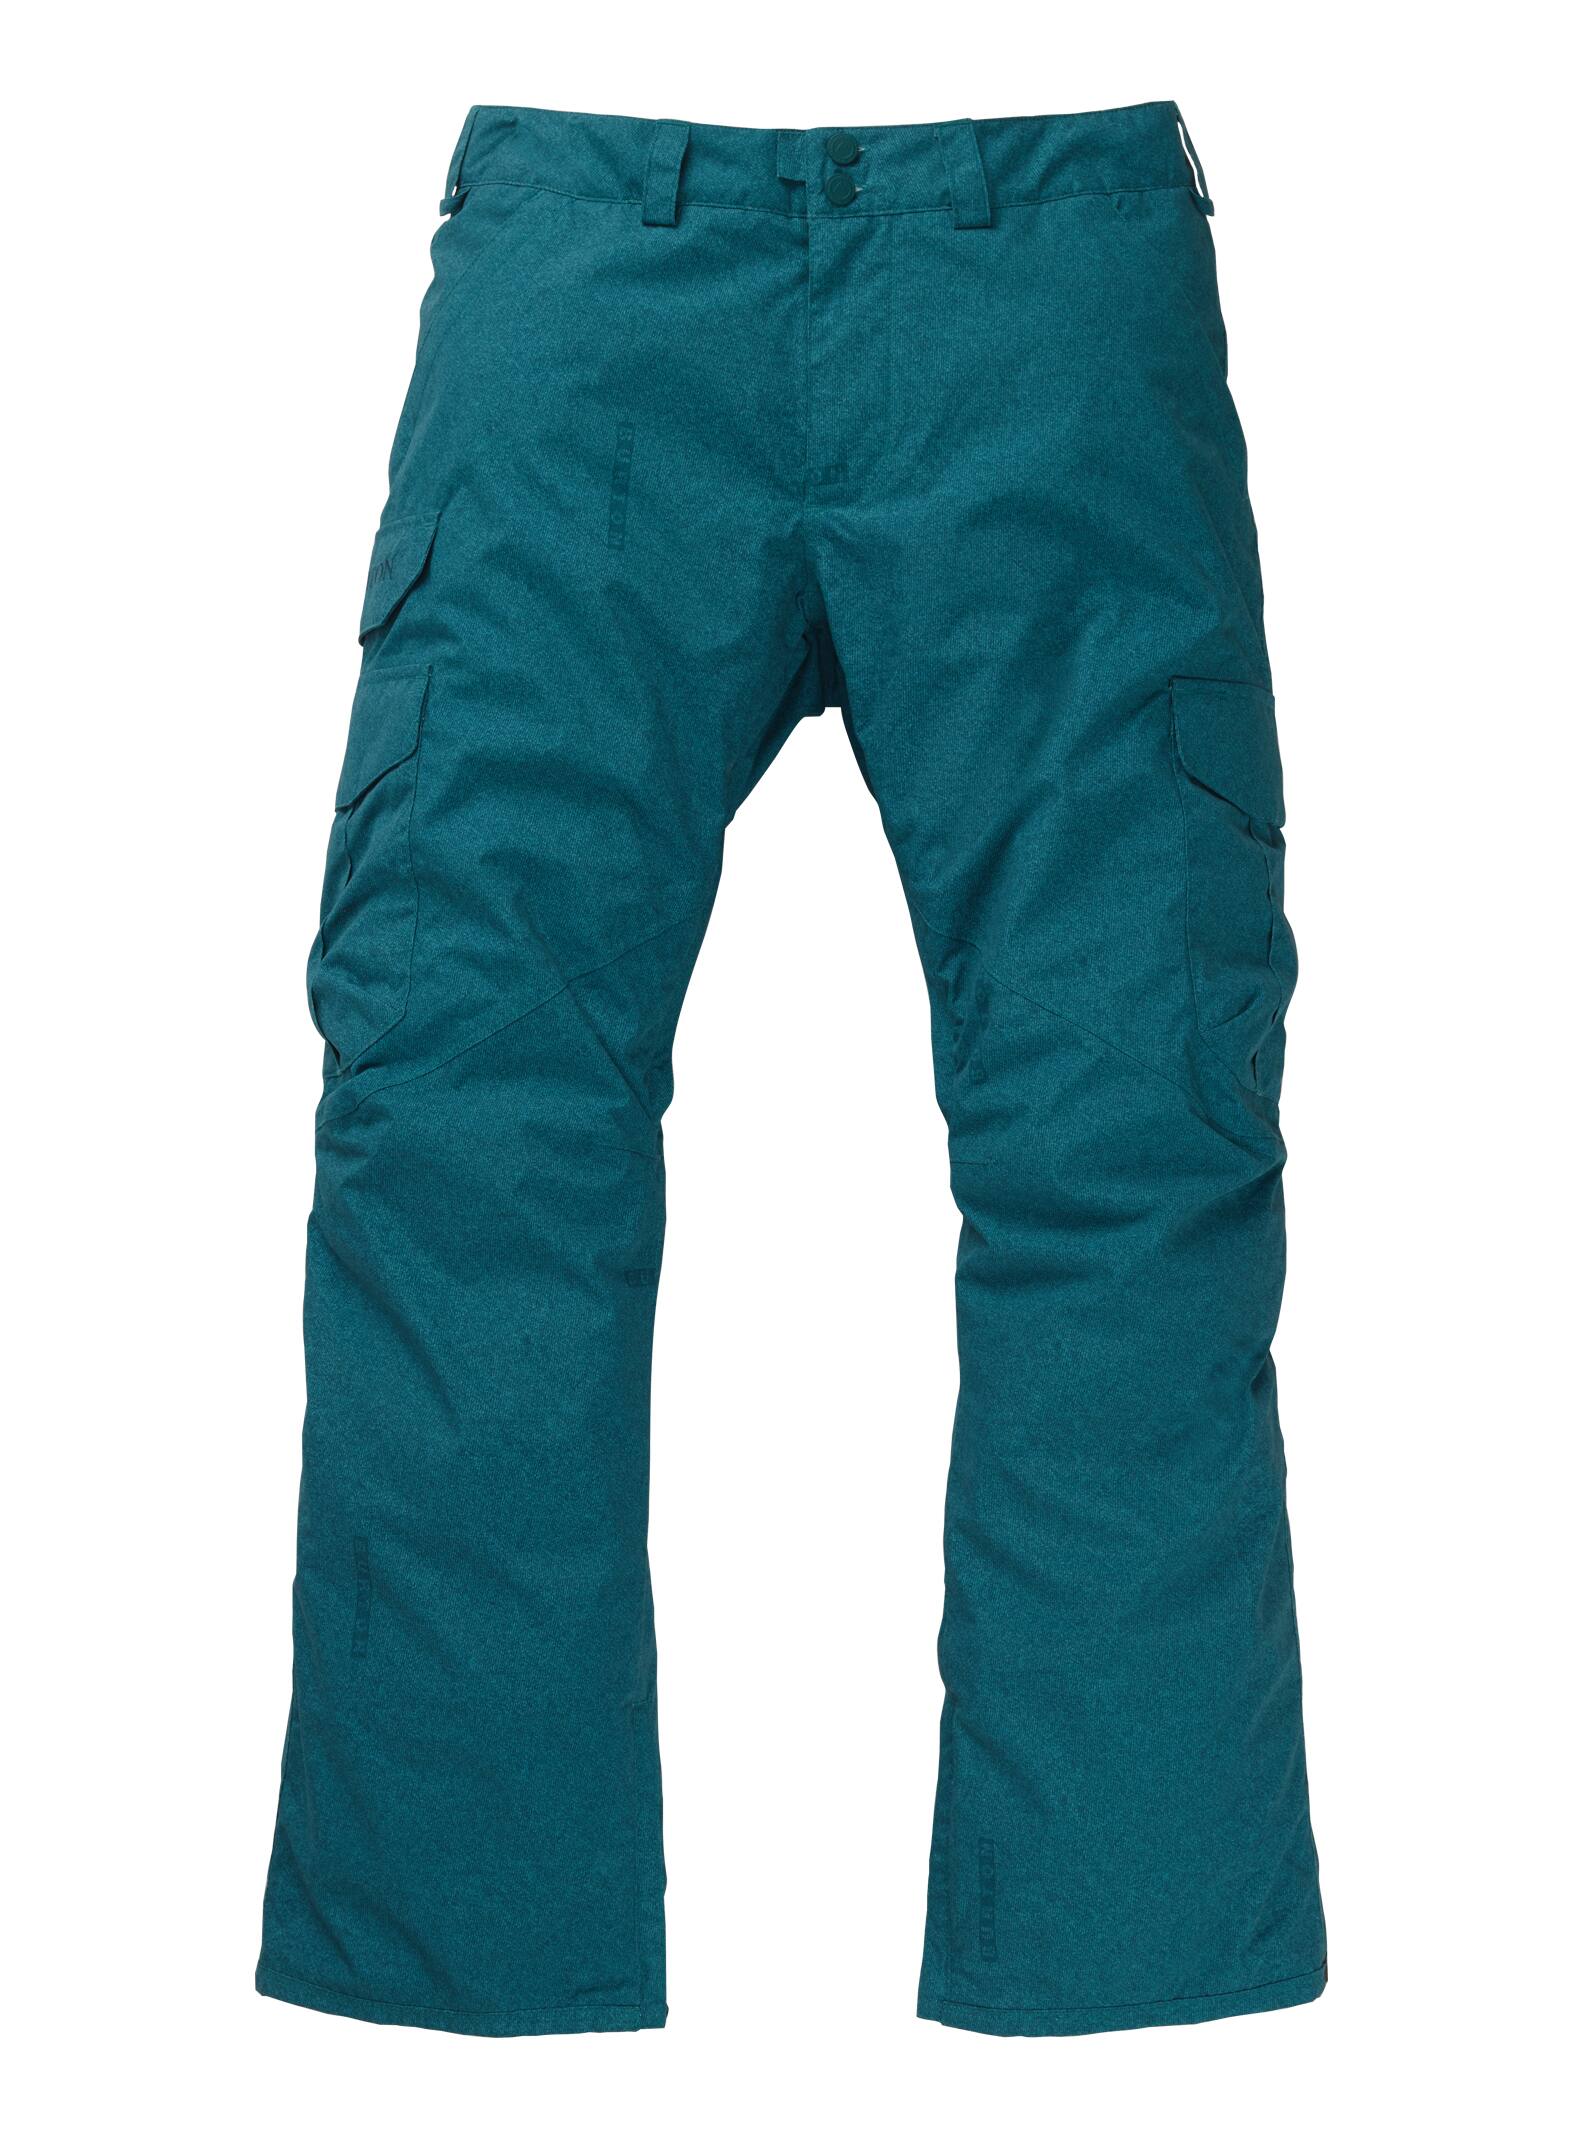 Burton Elite Cargo Pantalon De Snowboard Ni/ñas